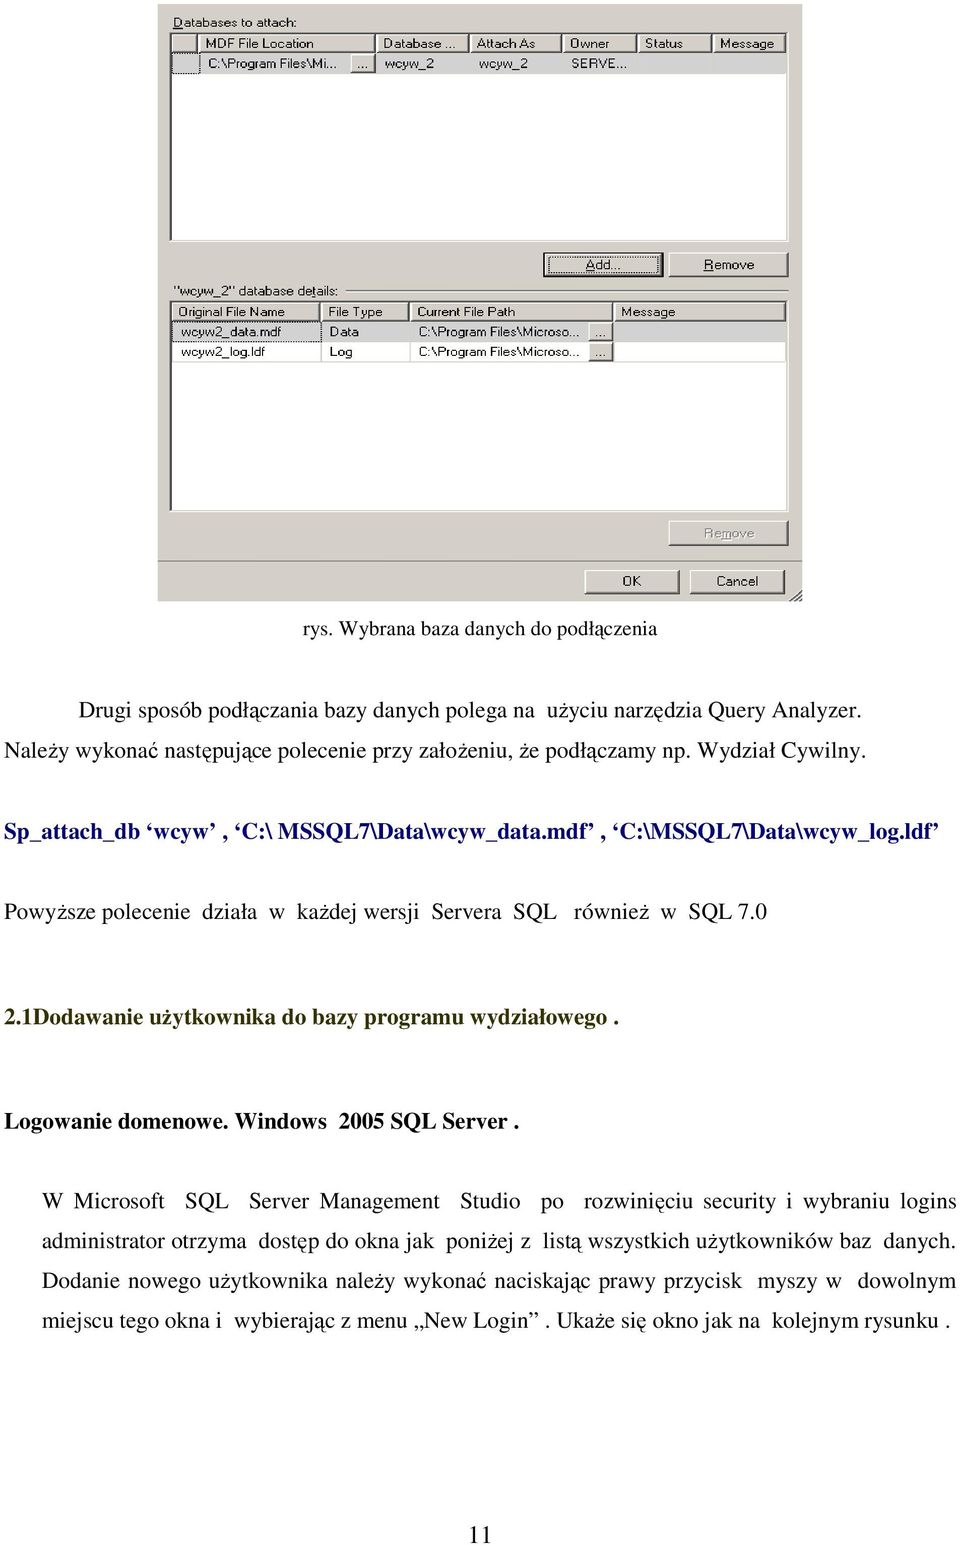 1Dodawanie uŝytkownika do bazy programu wydziałowego. Logowanie domenowe. Windows 2005 SQL Server.